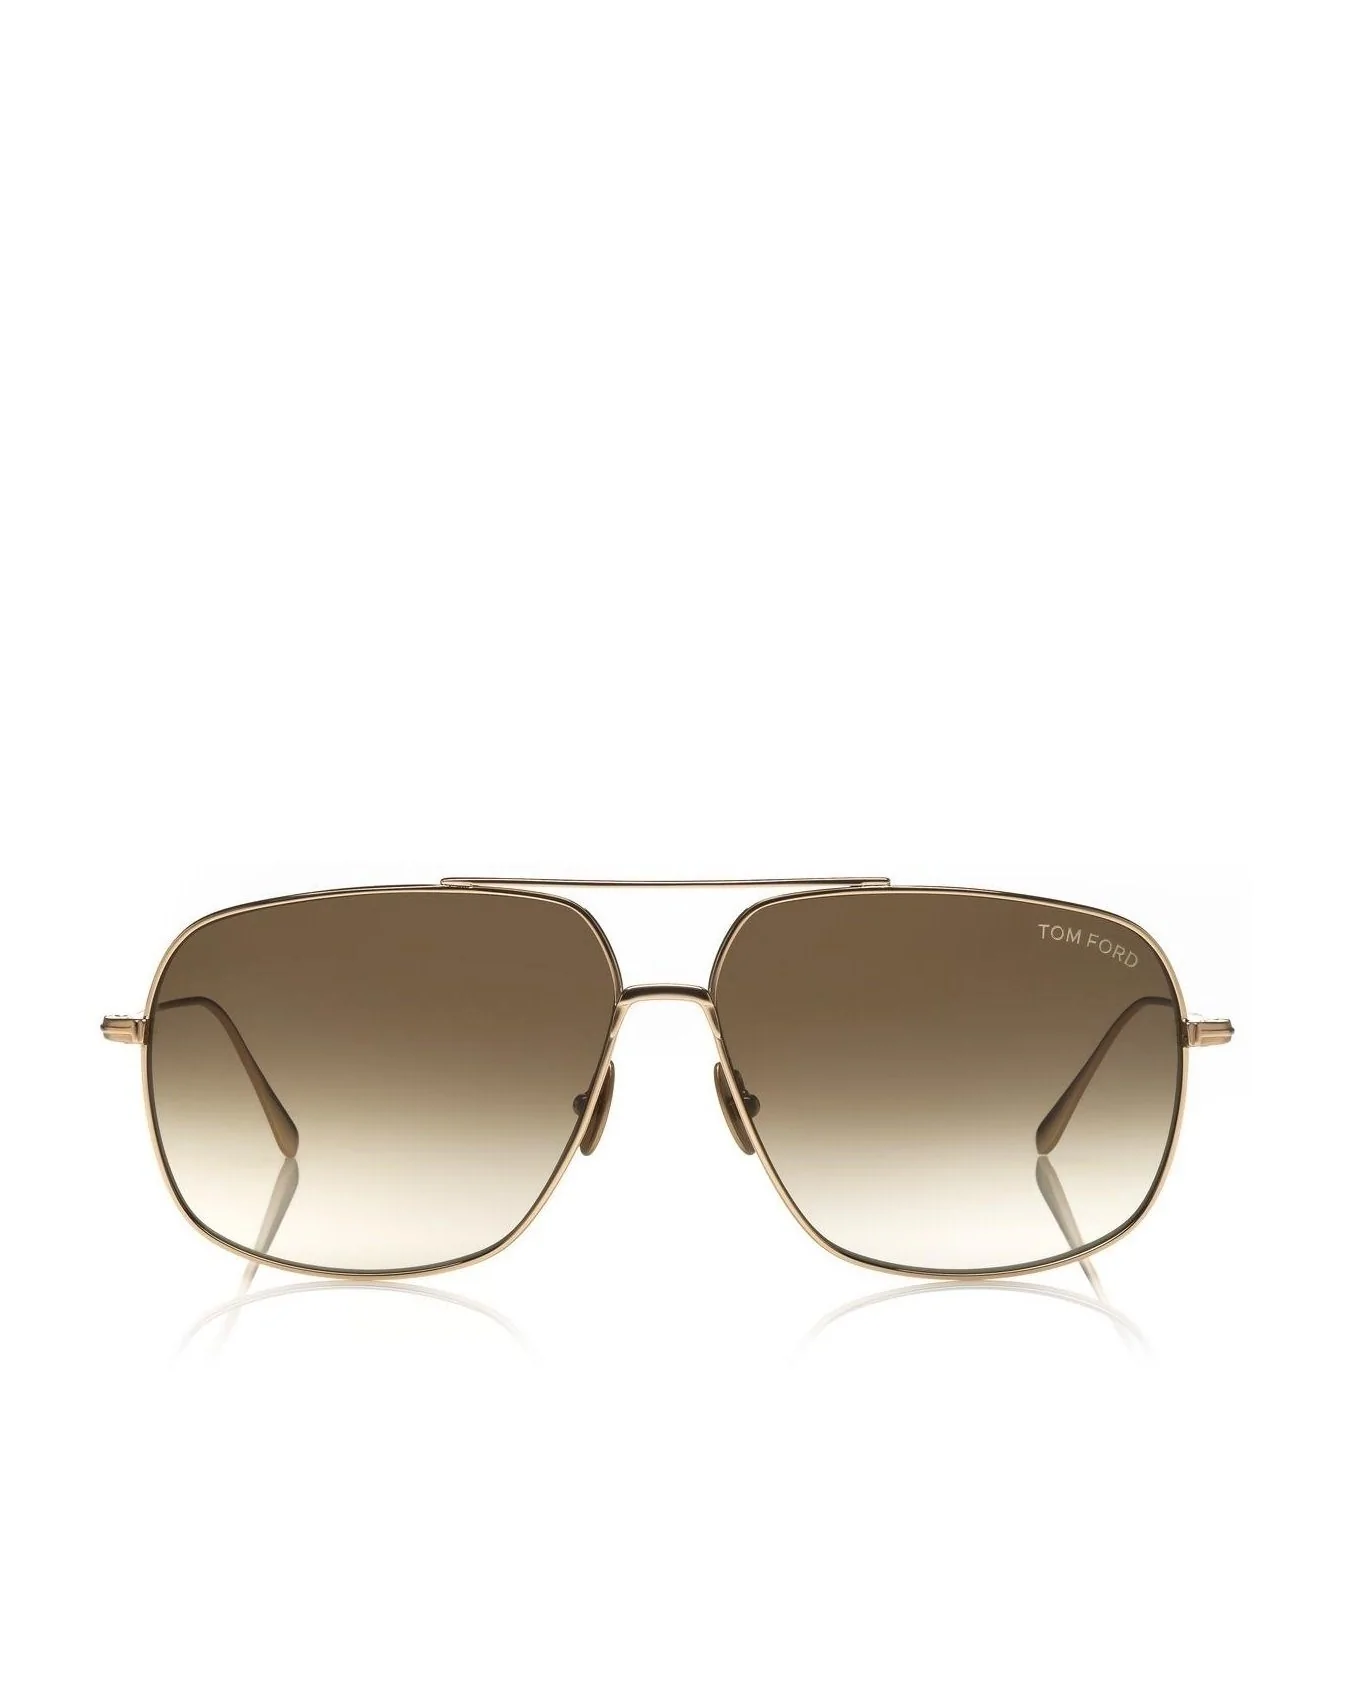 Tom Ford John Women's Sunglasses, Rose Gold